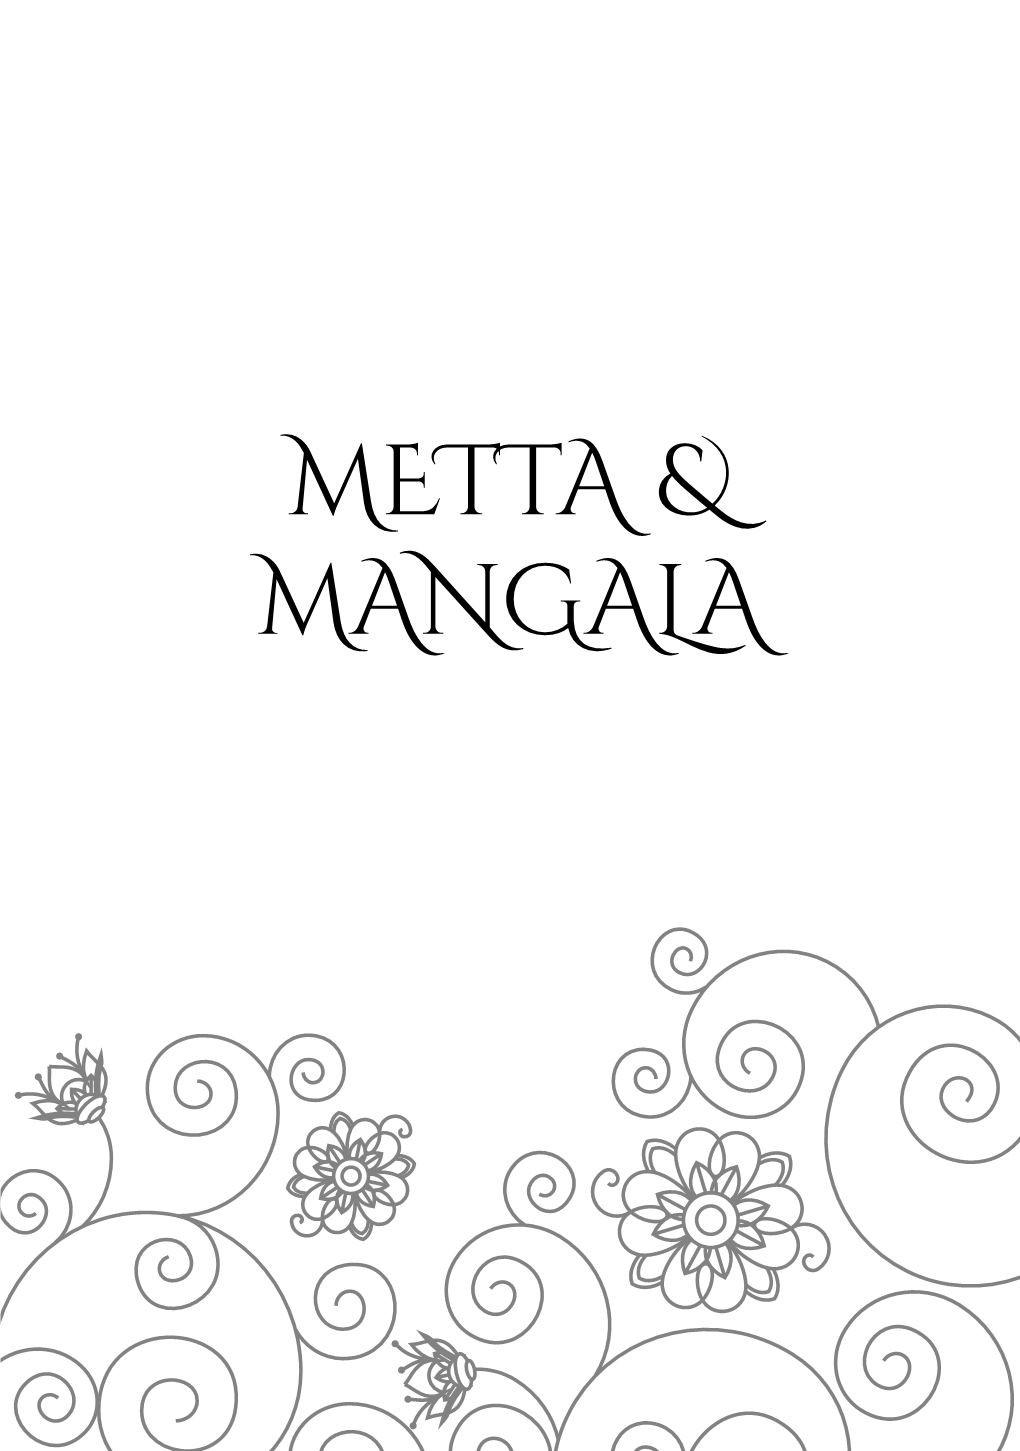 Metta & Mangala